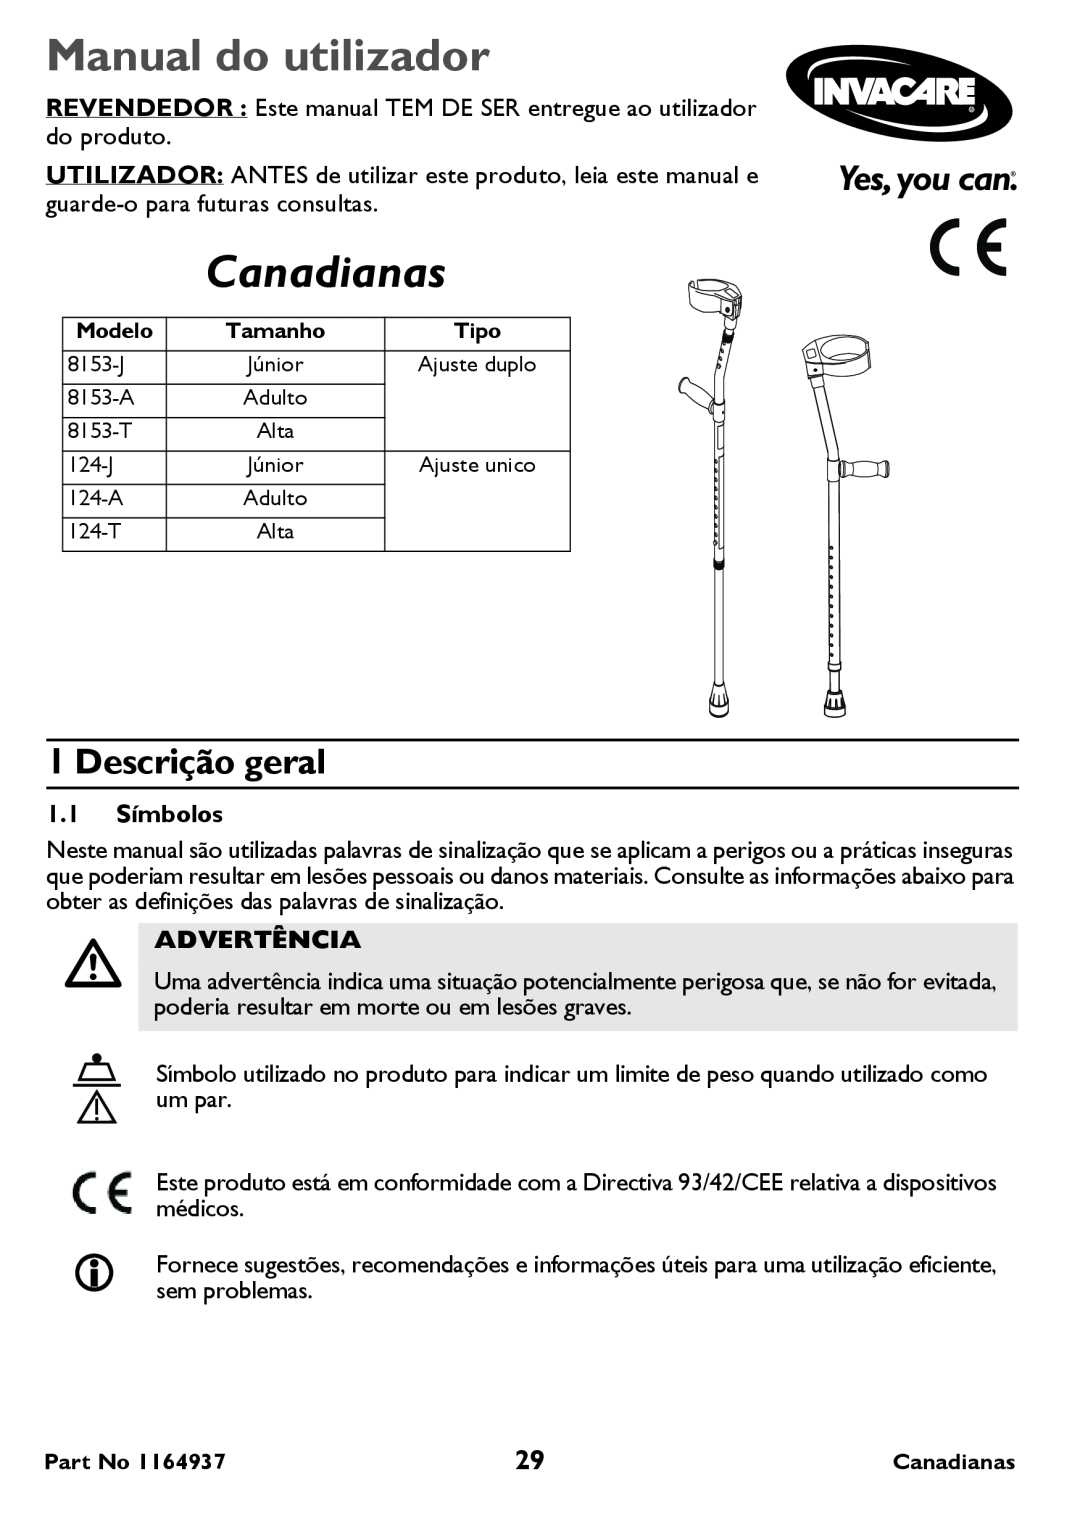 Invacare 124-J Junior Single Adjust Manual do utilizador, Canadianas, Descrição geral, Advertência, 1.1 Símbolos 